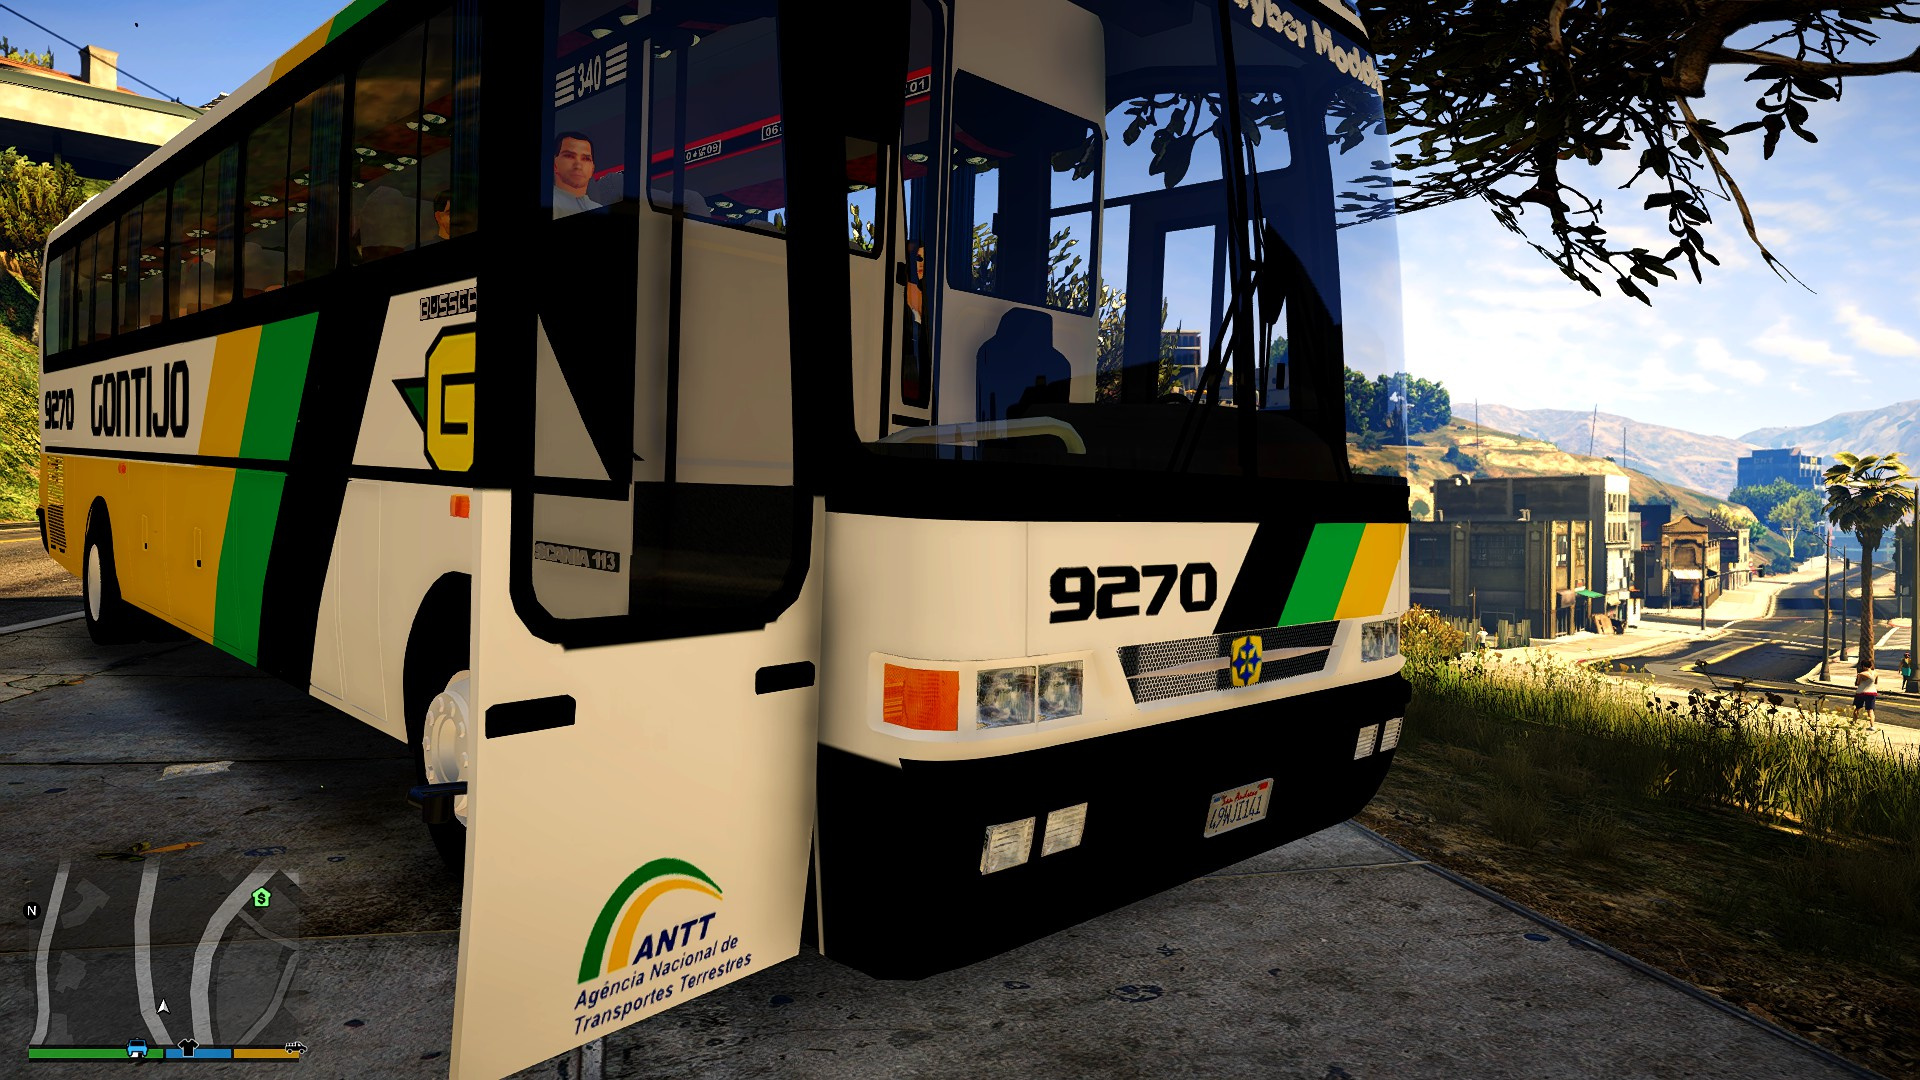 mod ônibus proton bus